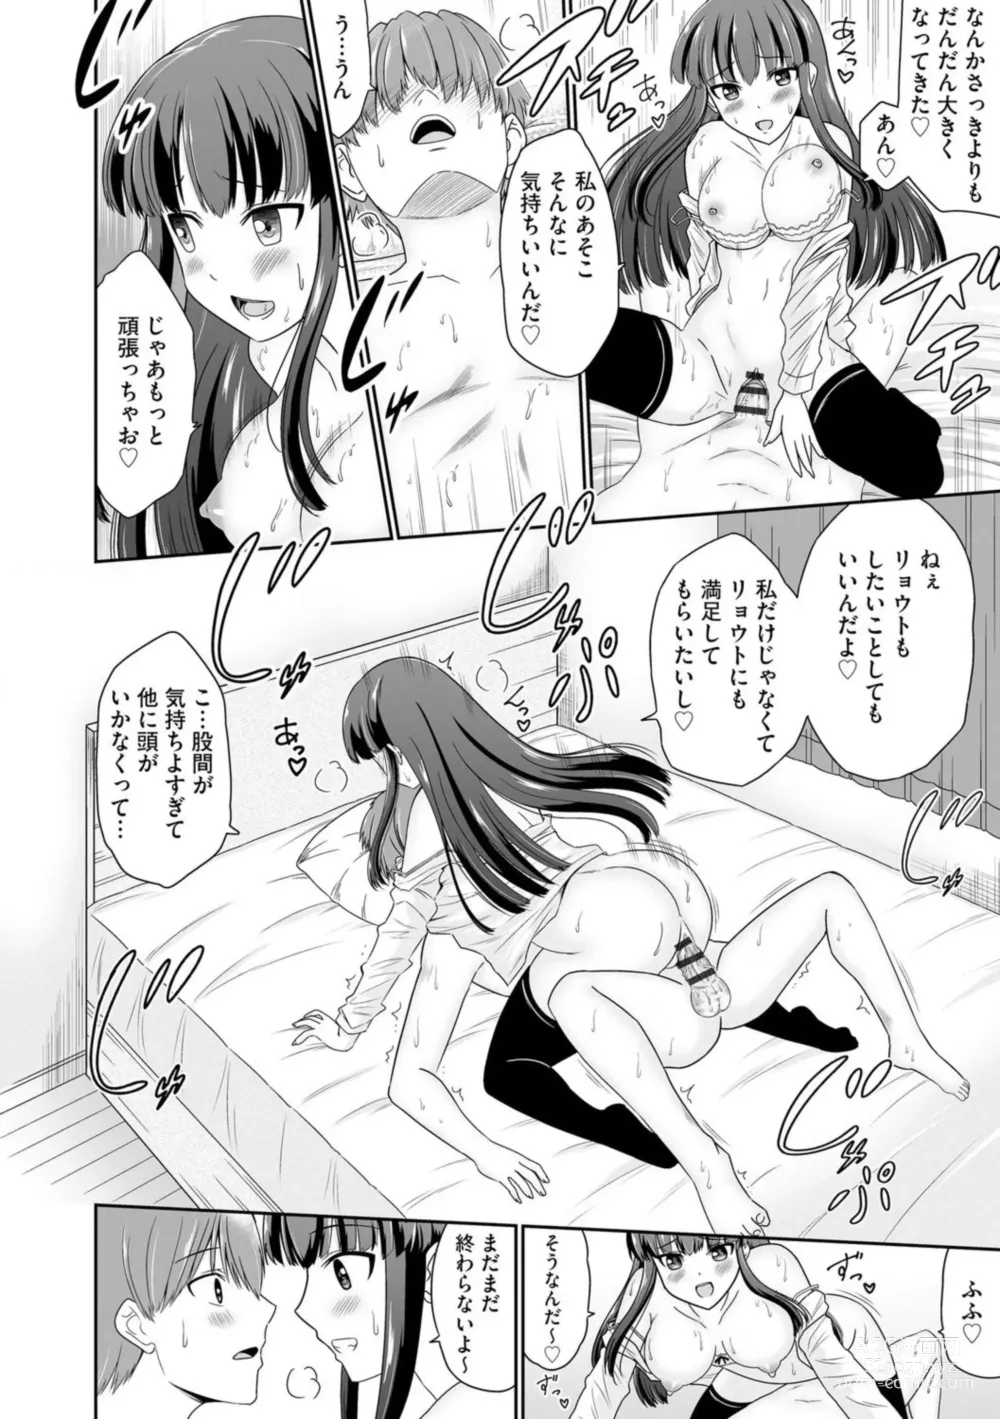 Page 14 of manga Ichiban wa Watashi ni Kimete 1